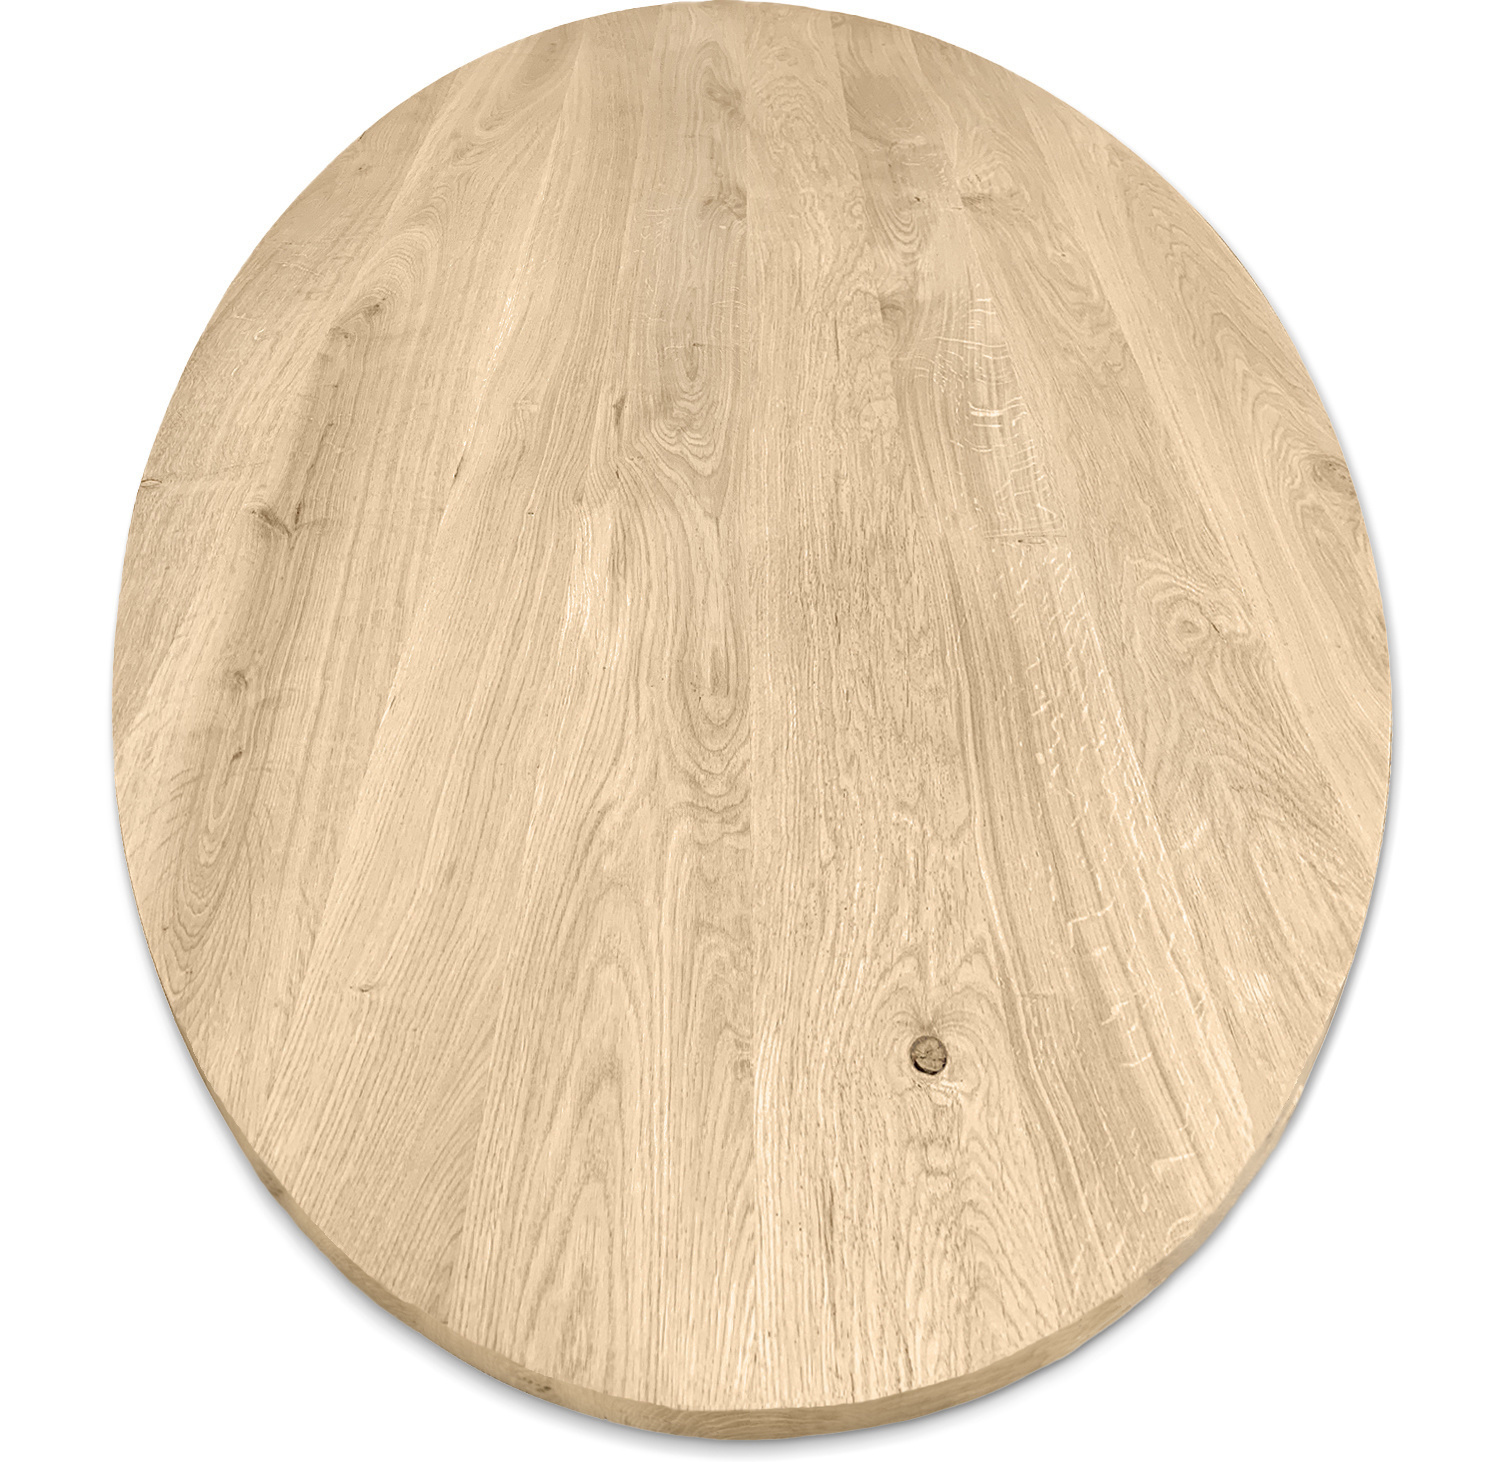  Ovaal eiken tafelblad - 4 cm dik (1-laag) - Diverse afmetingen - rustiek Europees eikenhout - met brede lamellen (circa 10-12 cm) - verlijmd kd 8-12%